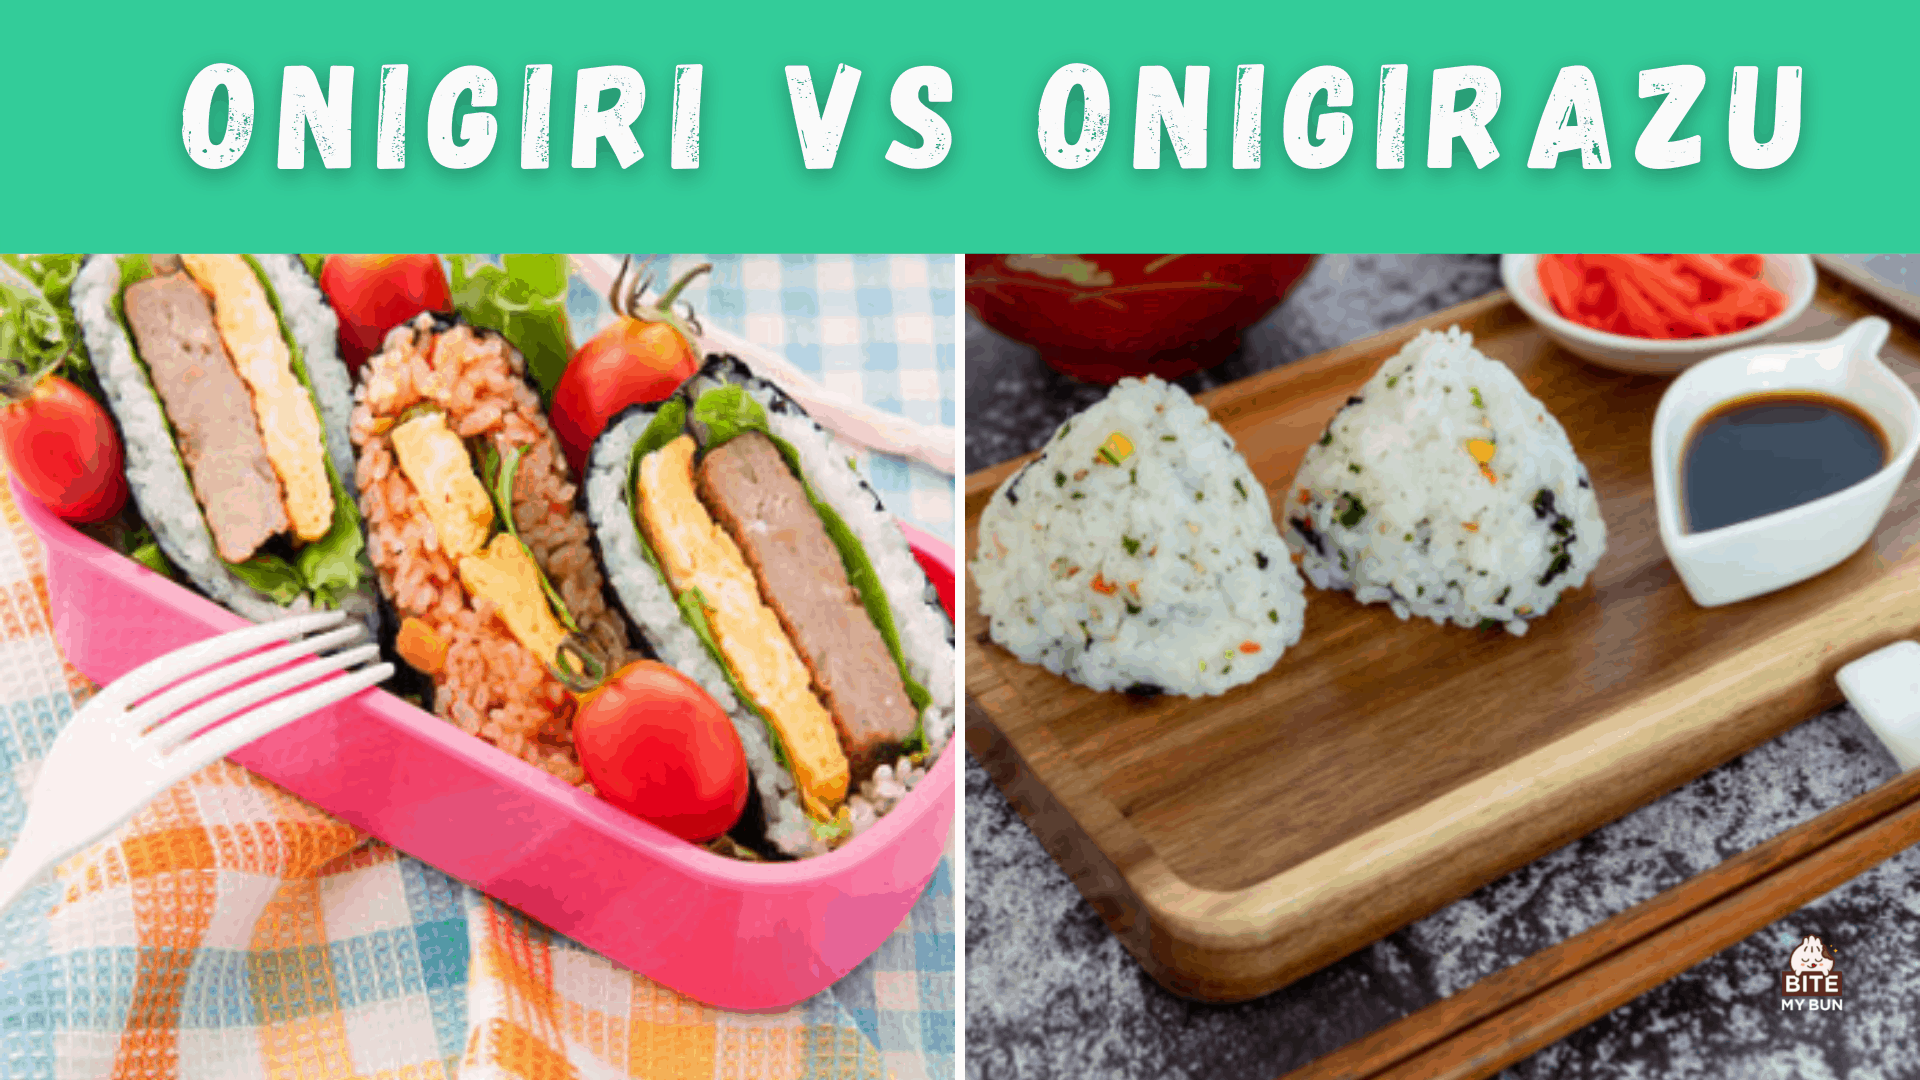 Onigiri срещу onigirazu | По какво се различават и защо искате да опитате и двете